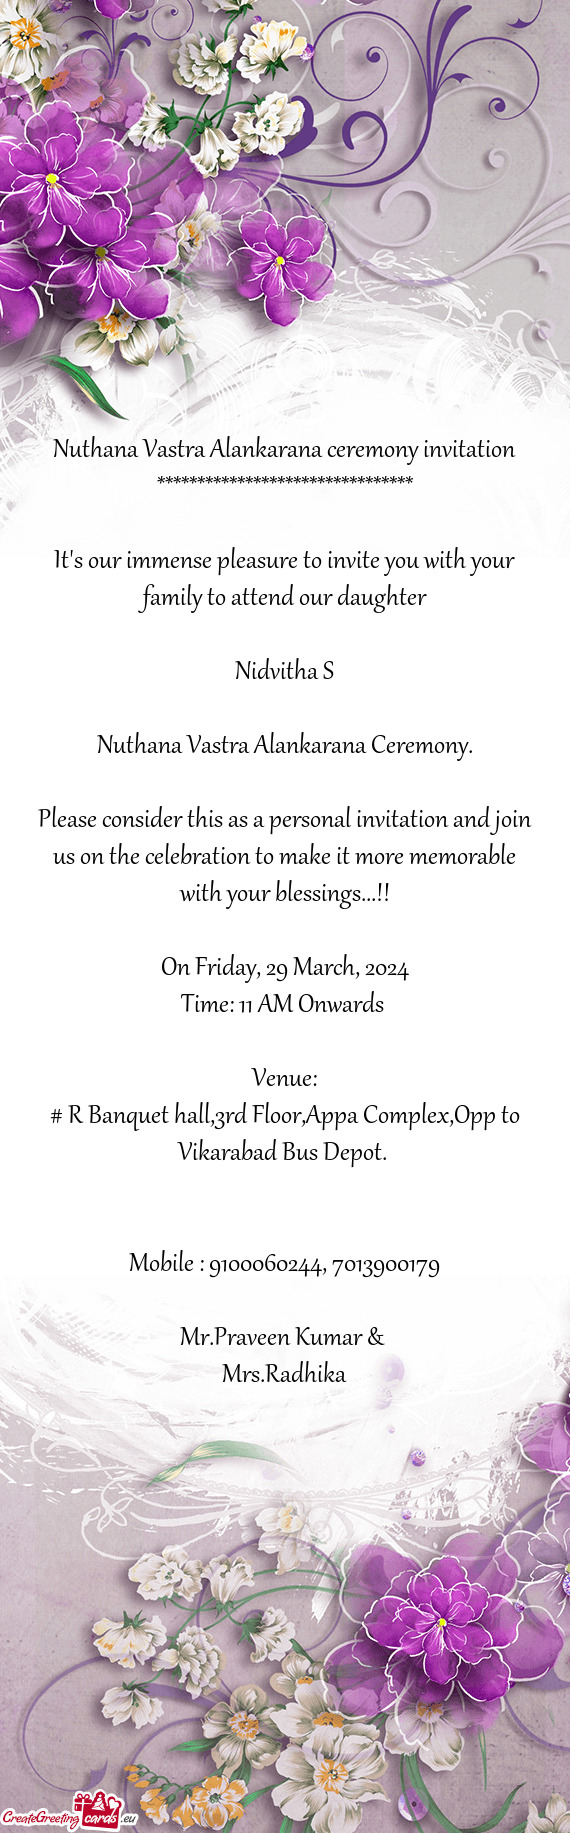 Nuthana Vastra Alankarana ceremony invitation